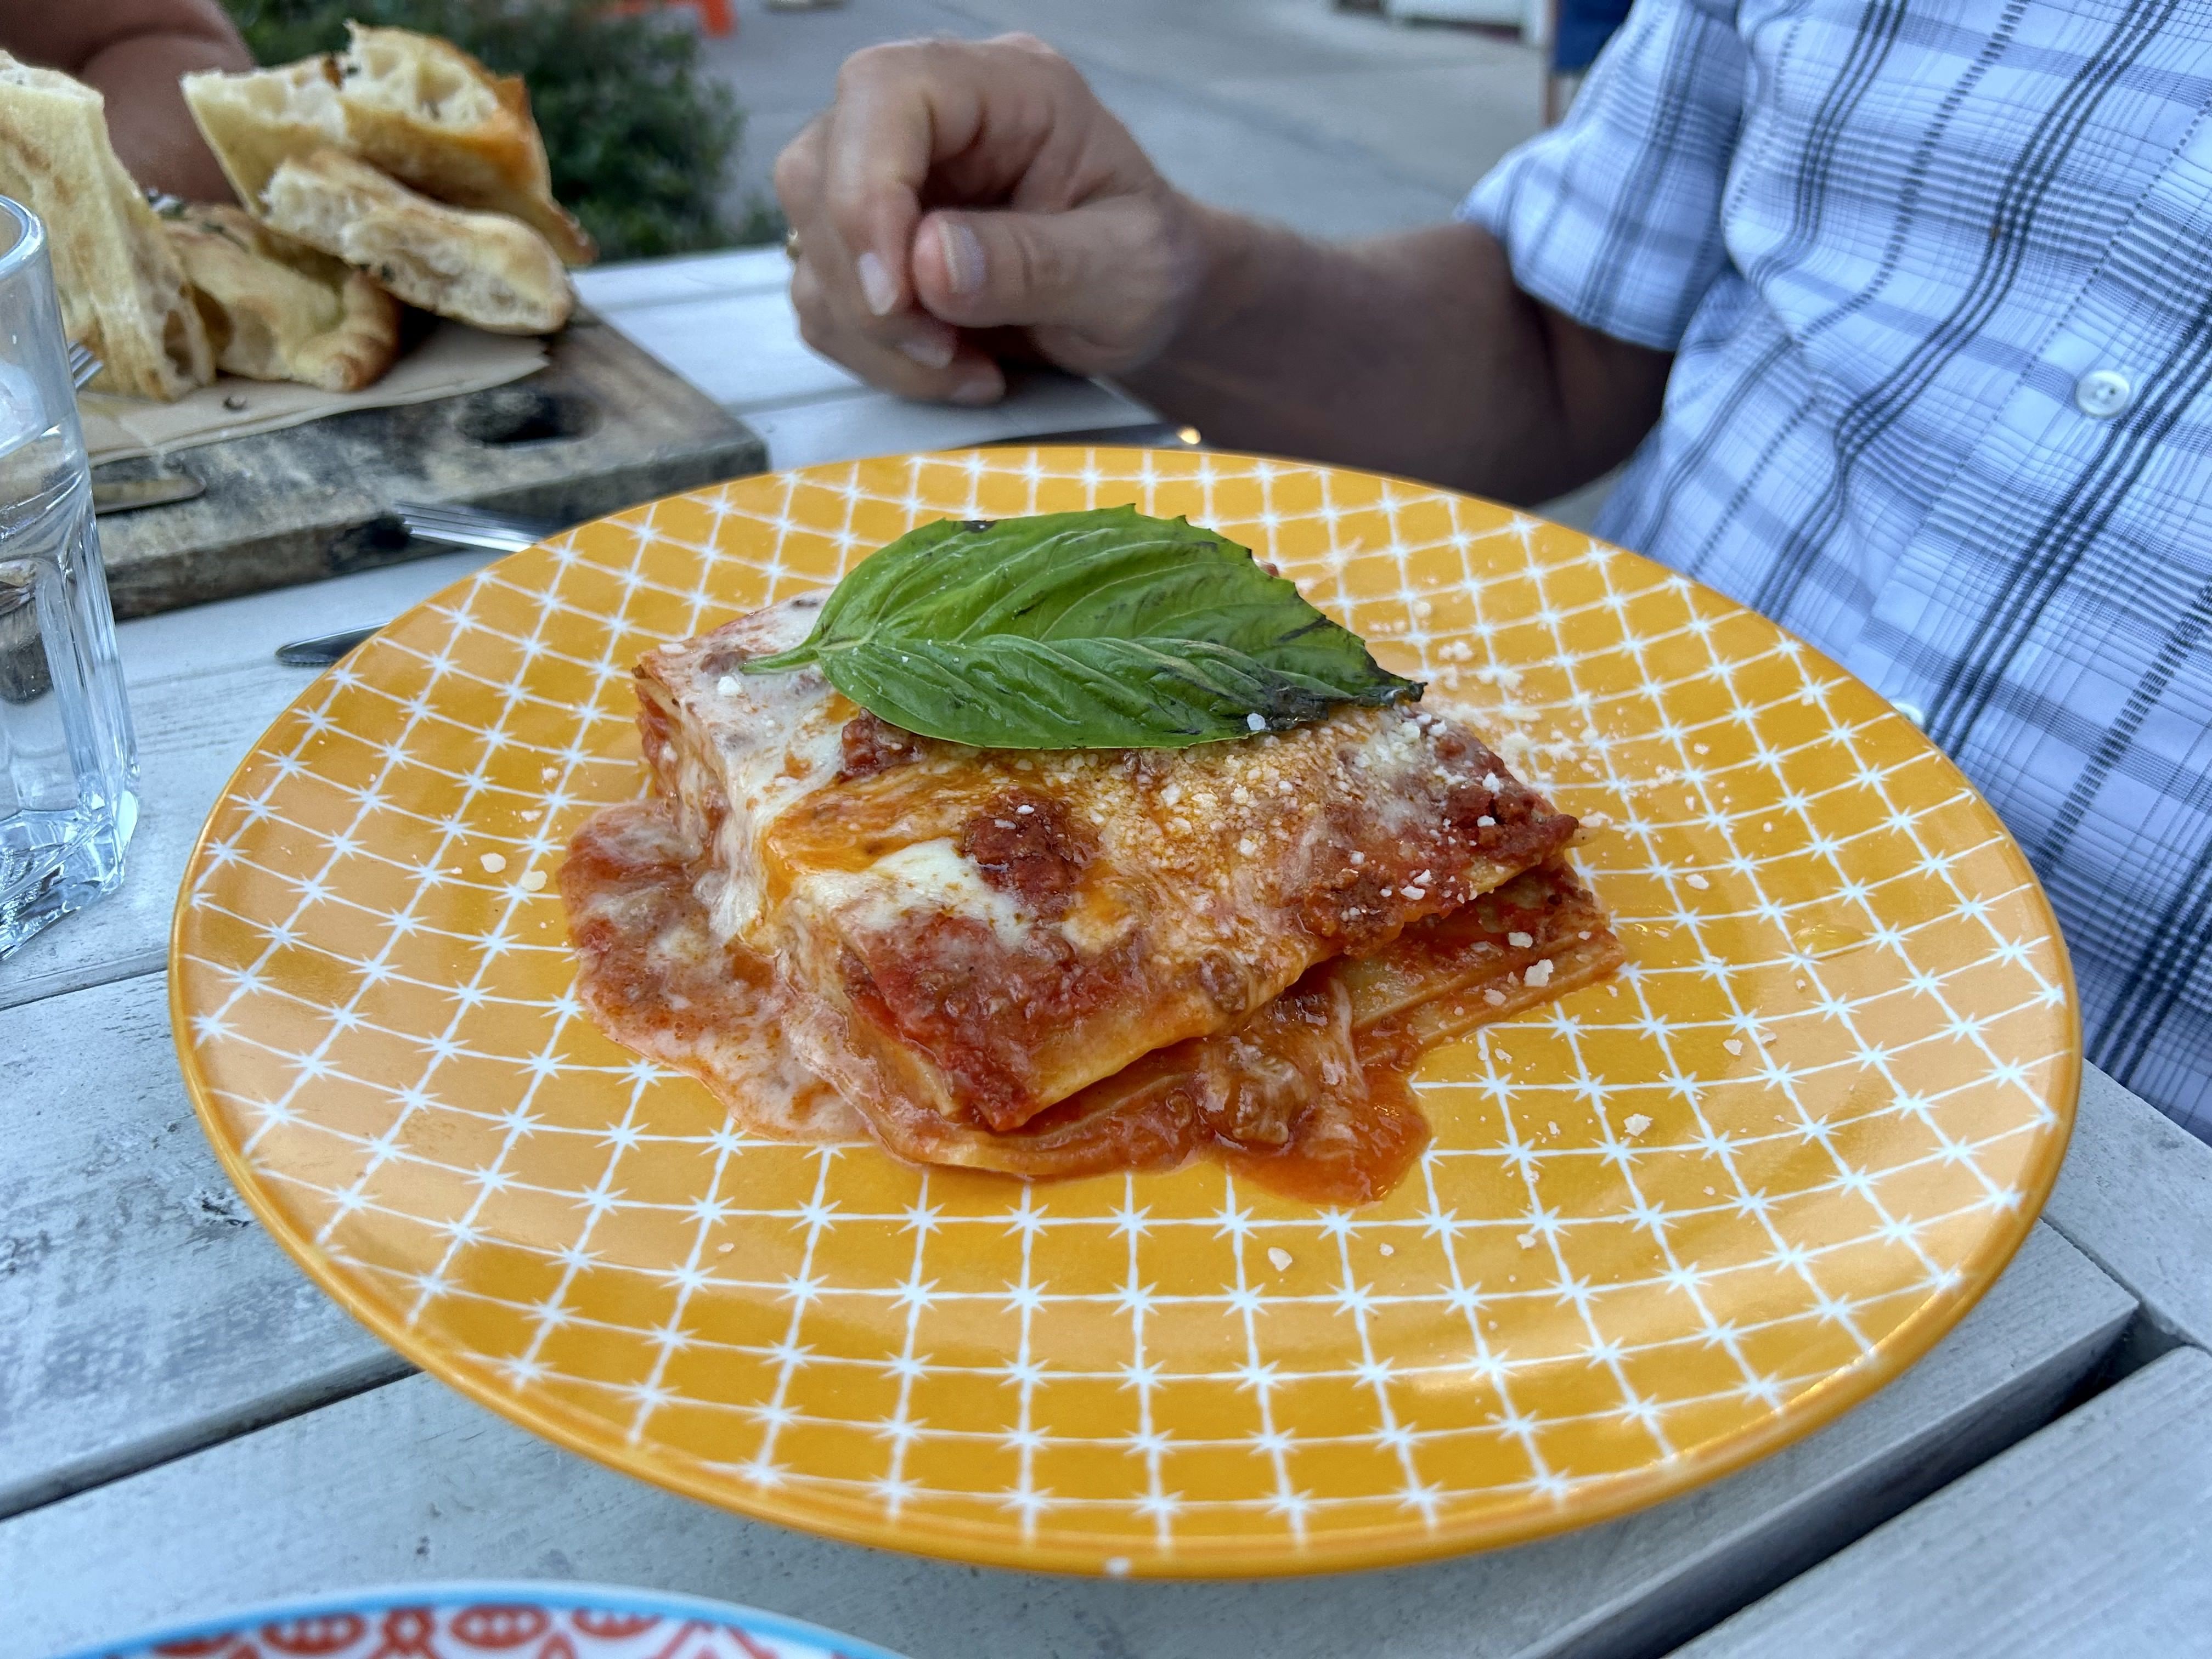 a plate of lasagna